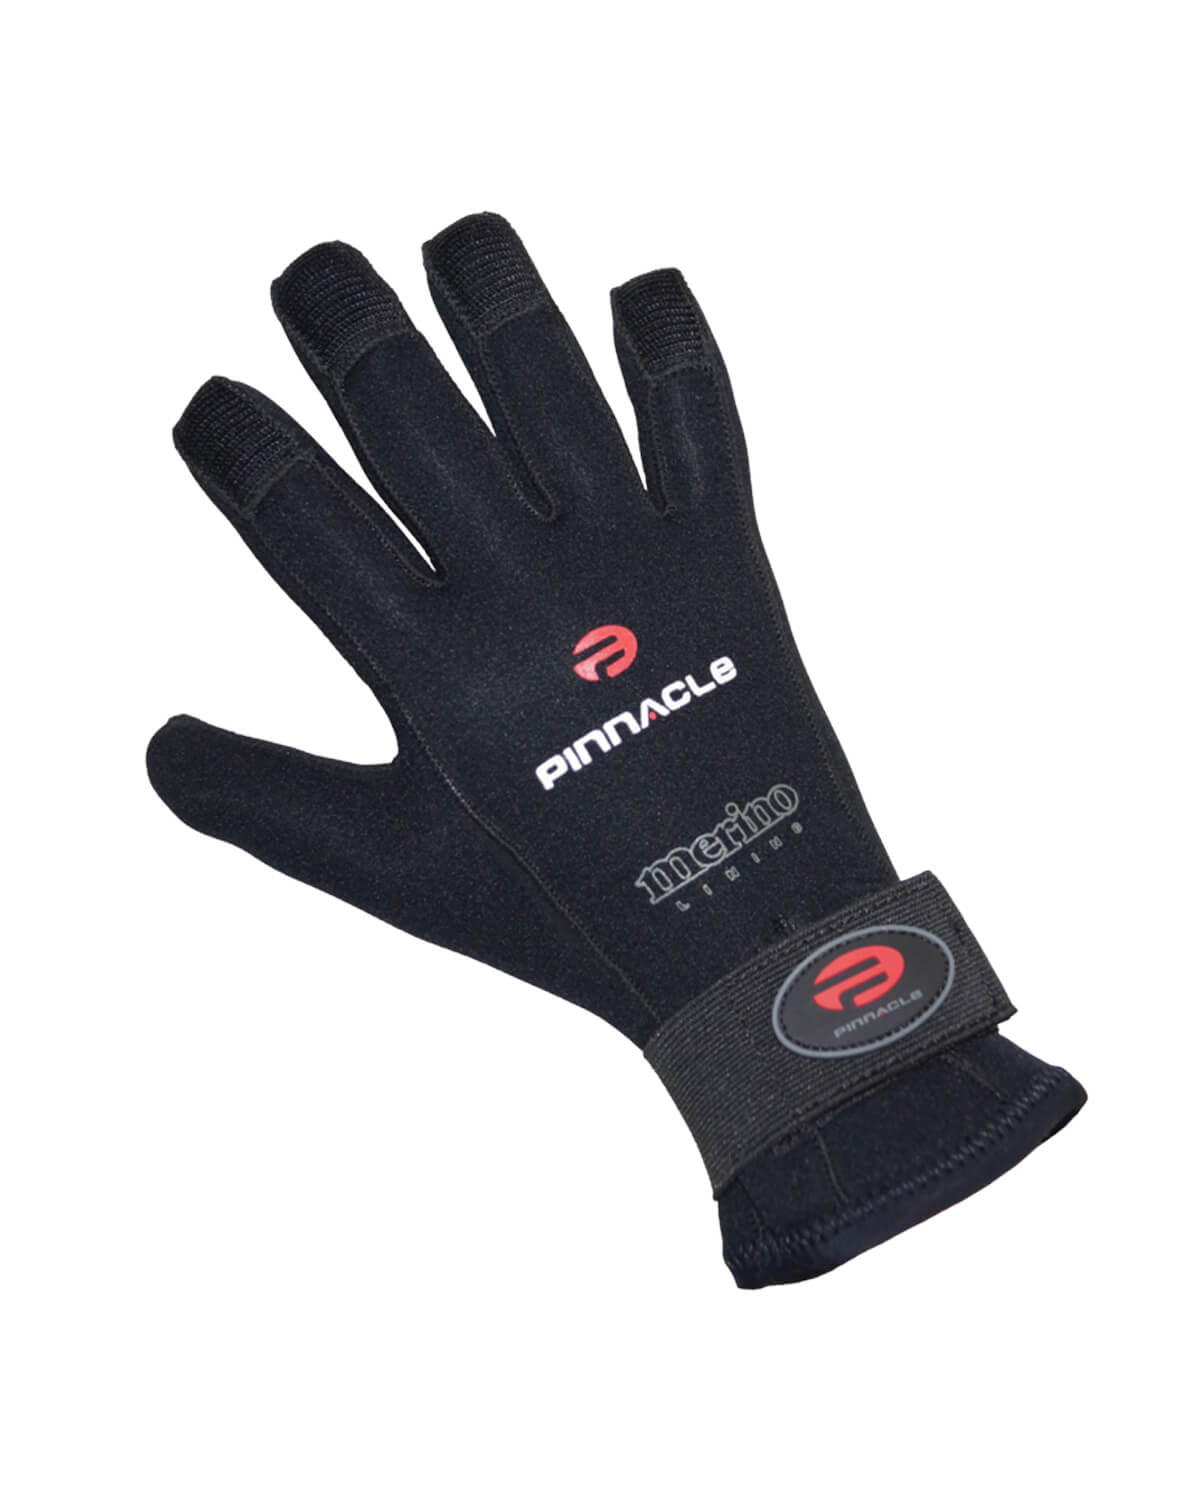 3mm Pinnacle NEO 3 Gloves